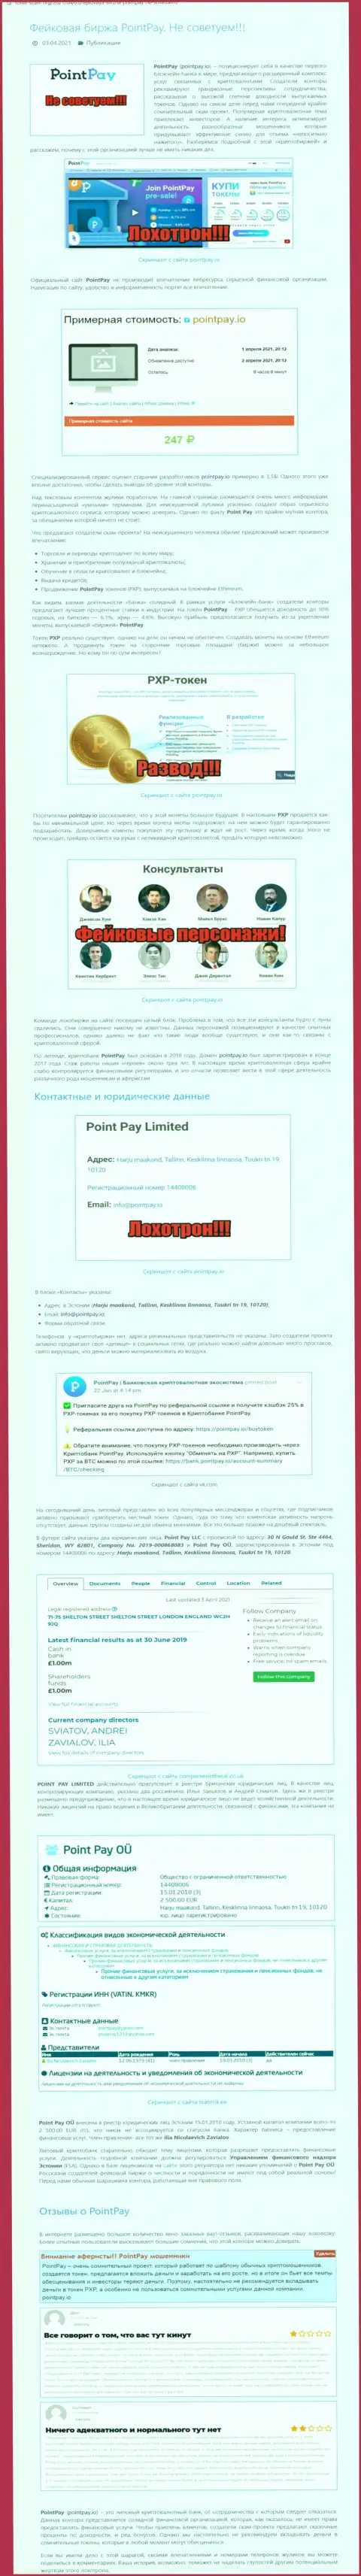 Point Pay - это ЛОХОТРОН !!! В котором лохов разводят на средства (обзор неправомерных деяний компании)